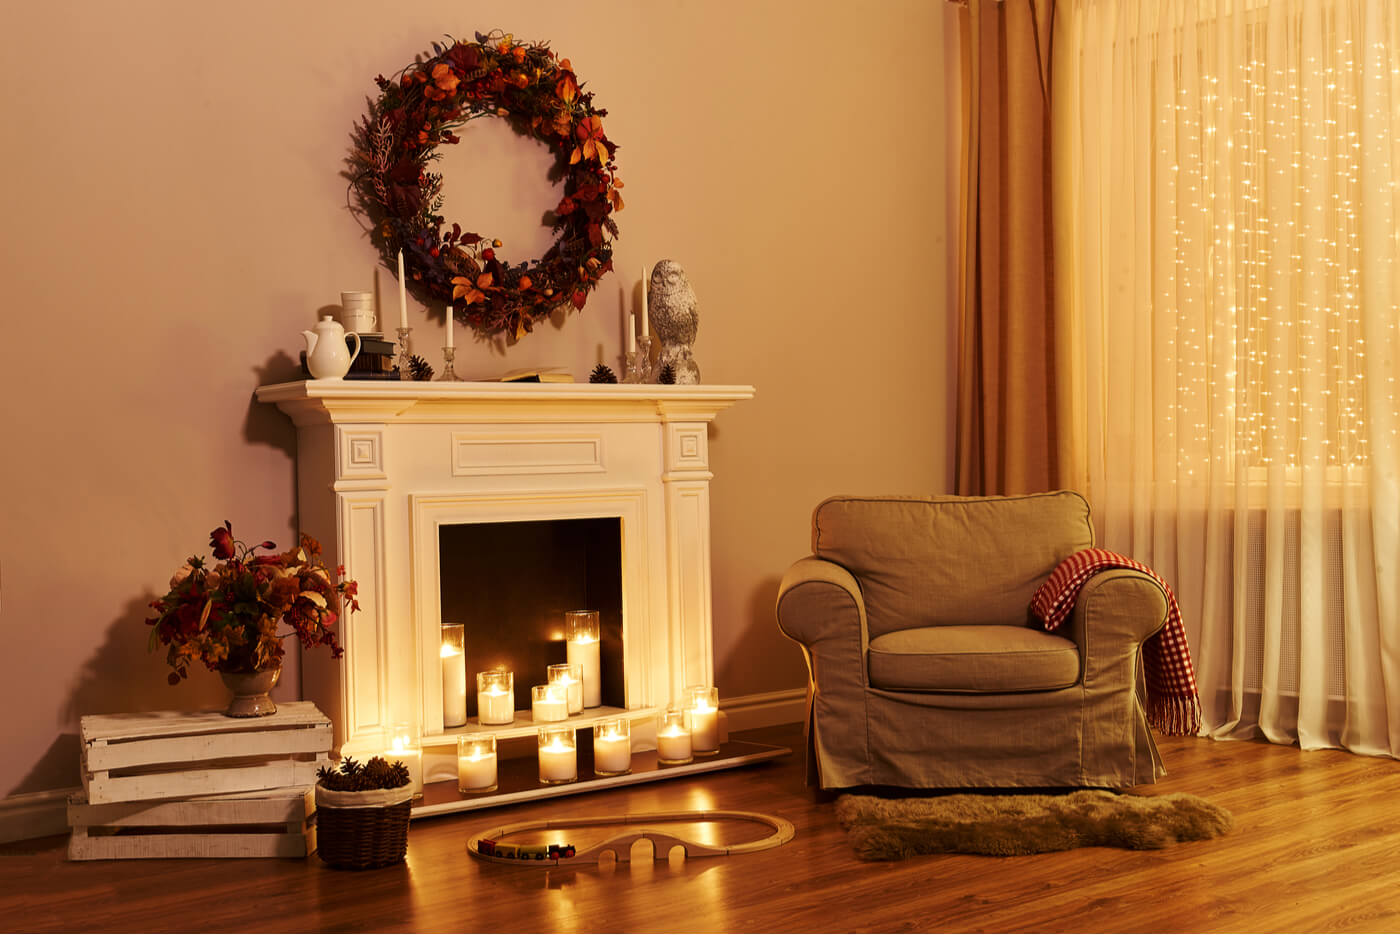 Mira cómo decorar una chimenea en Navidad